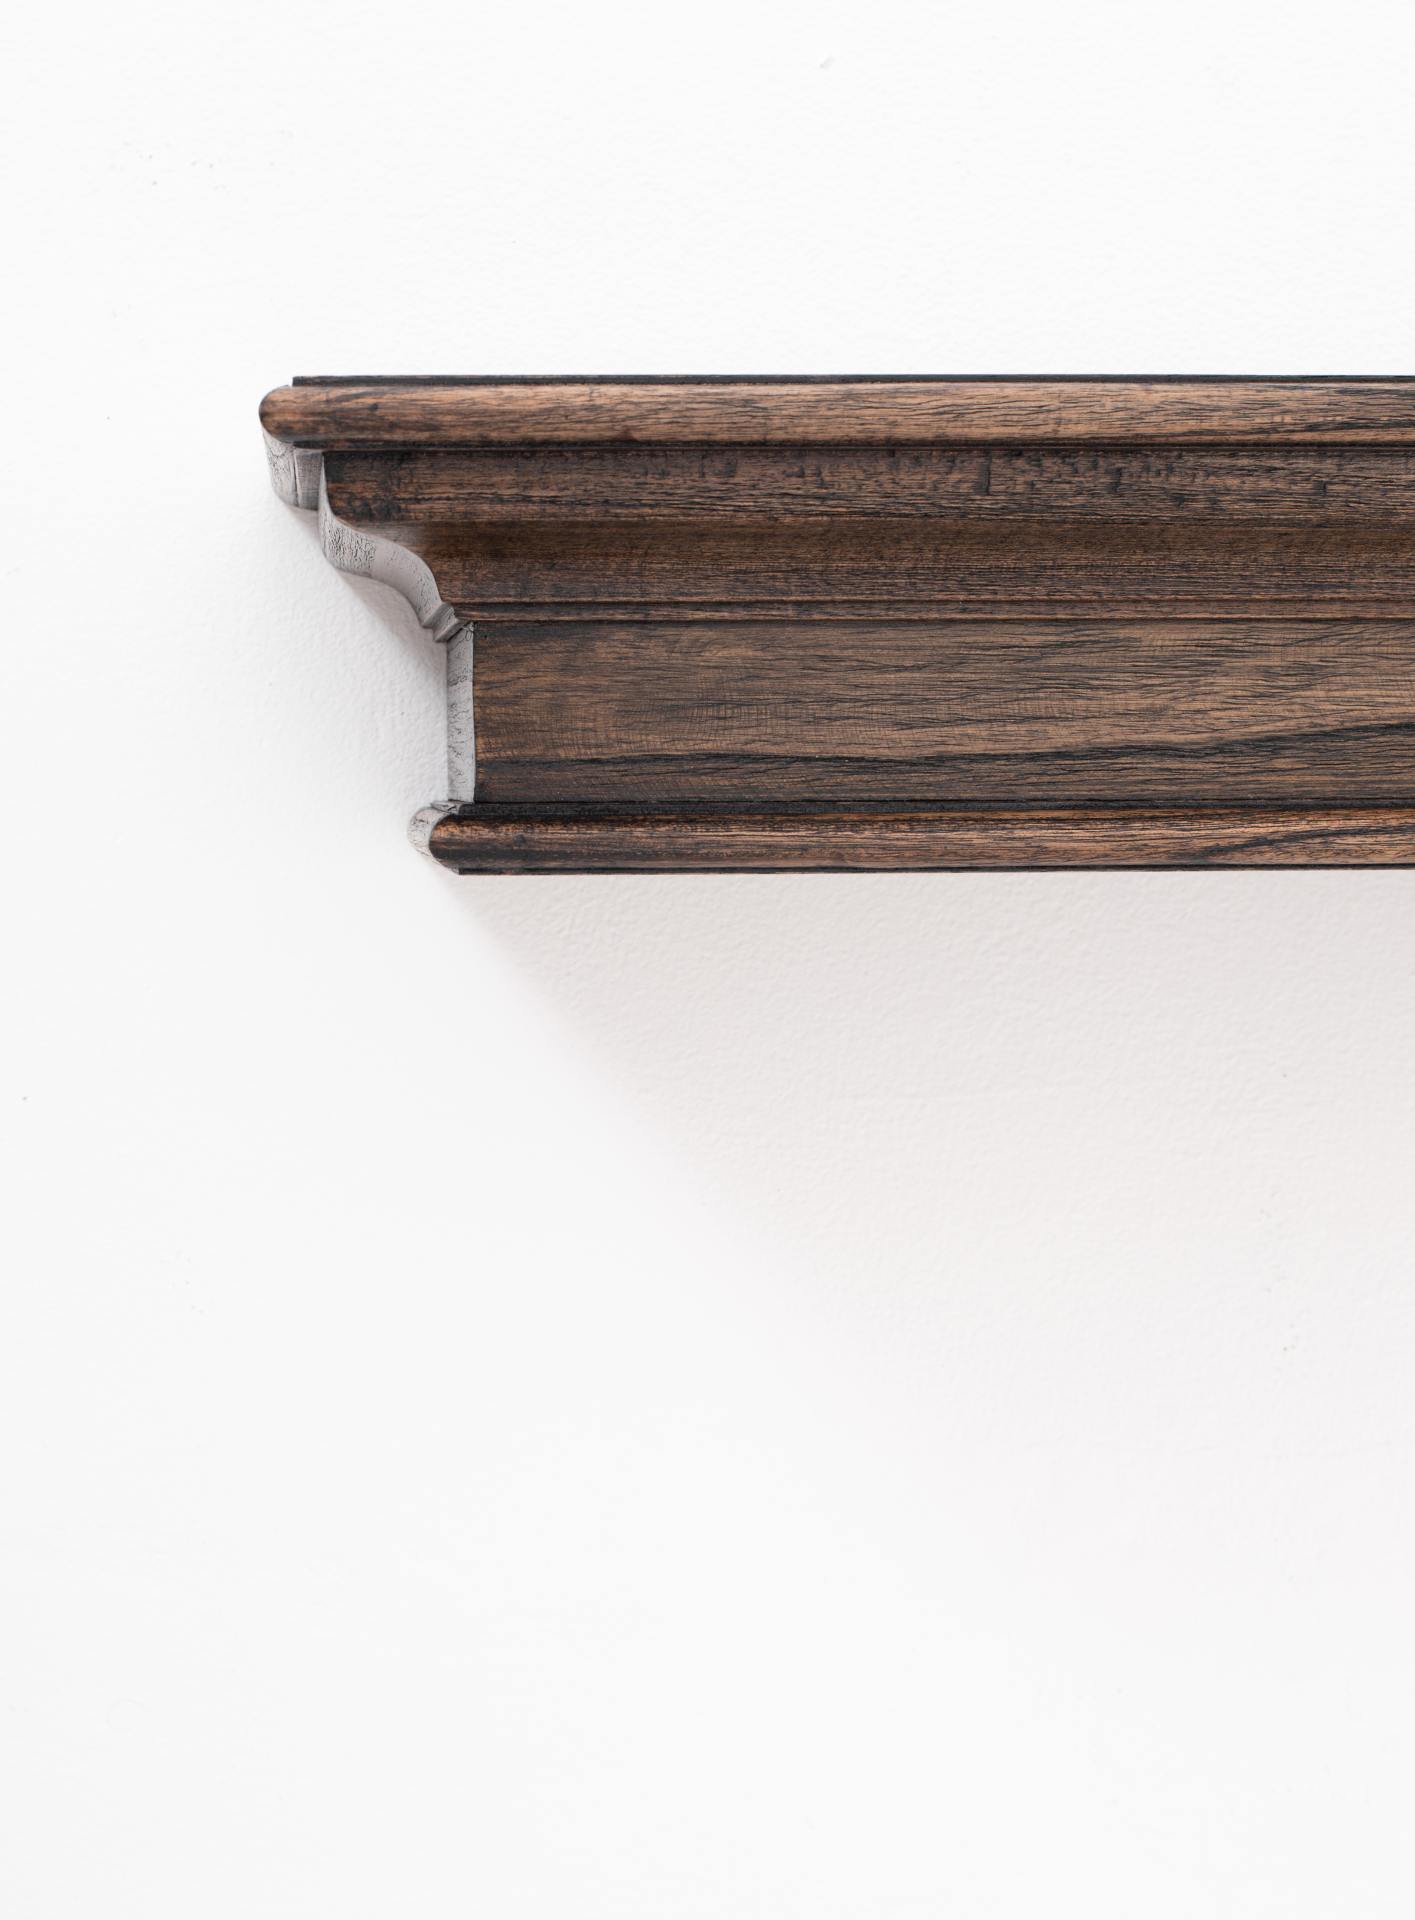 Das Wandregal Halifax Mindi überzeugt mit seinem Landhaus Stil. Gefertigt wurde es aus Mahagoni Holz, welches einen braunen Farbton besitzt. Das Regal besitzt eine Breite von 80 cm.